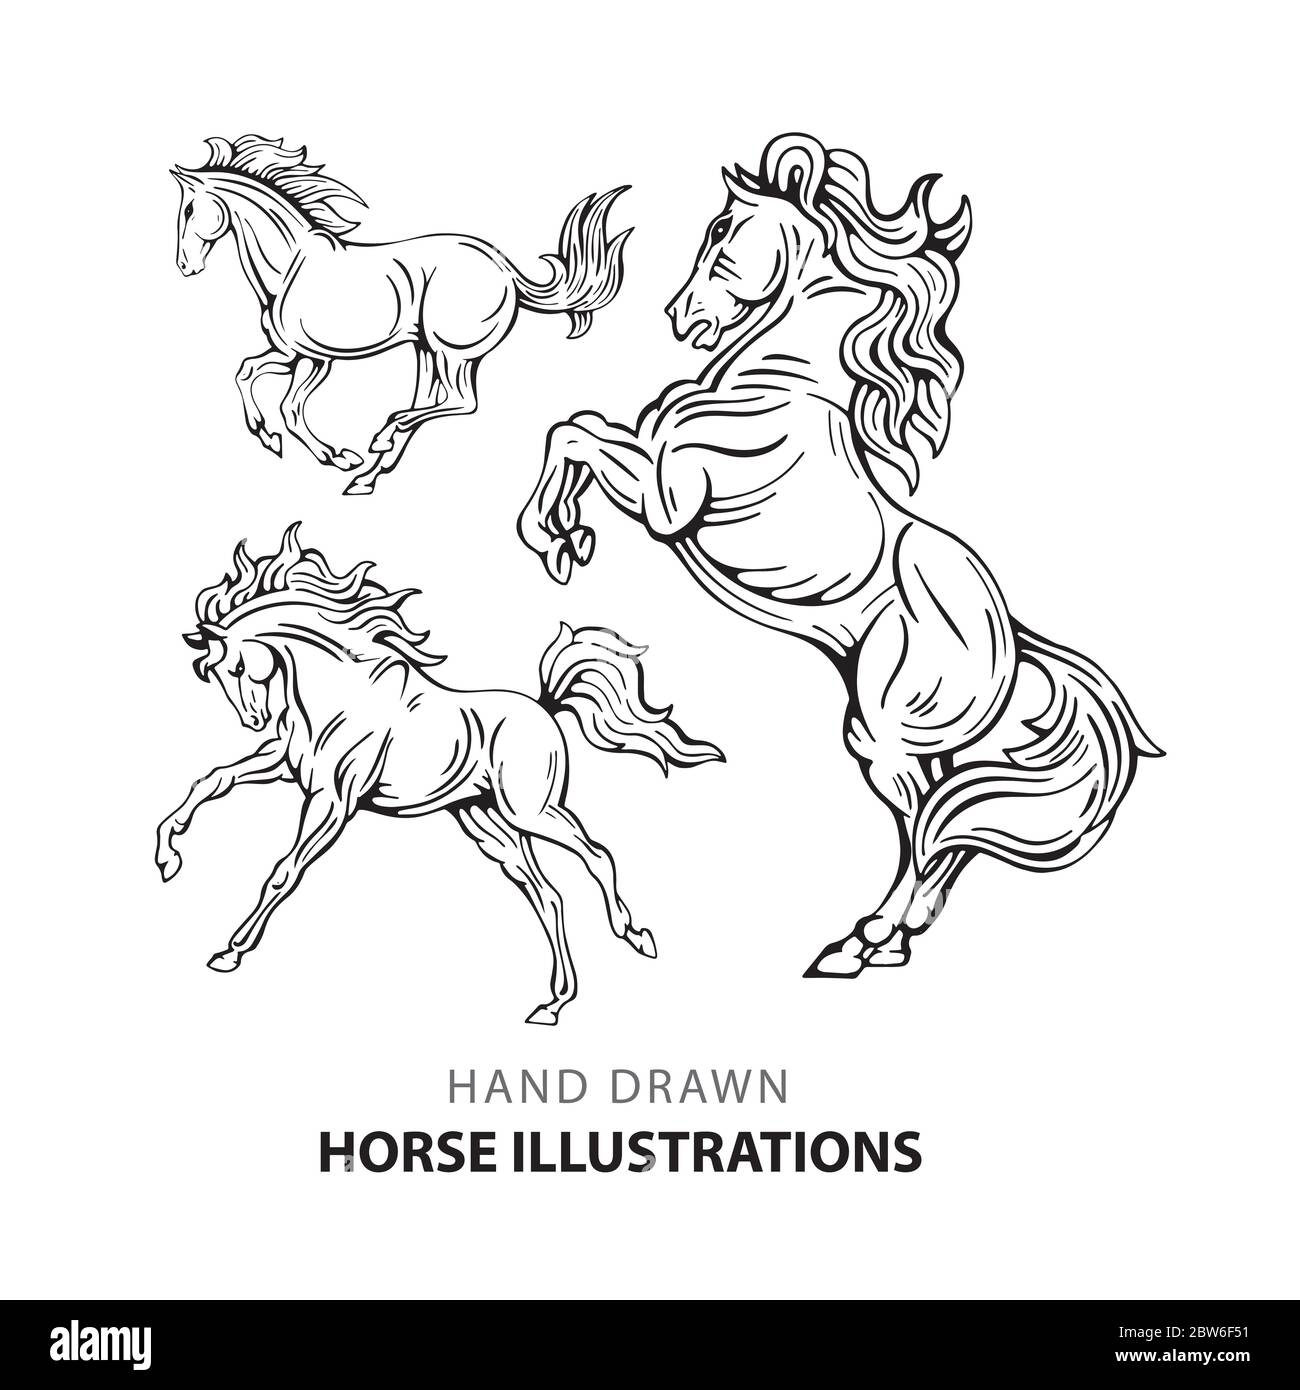 Cheval. Jeu d'illustrations de chevaux dessinées à la main. Esquisser des chevaux de dessin dans différentes poses. Partie de l'ensemble. Illustration de Vecteur